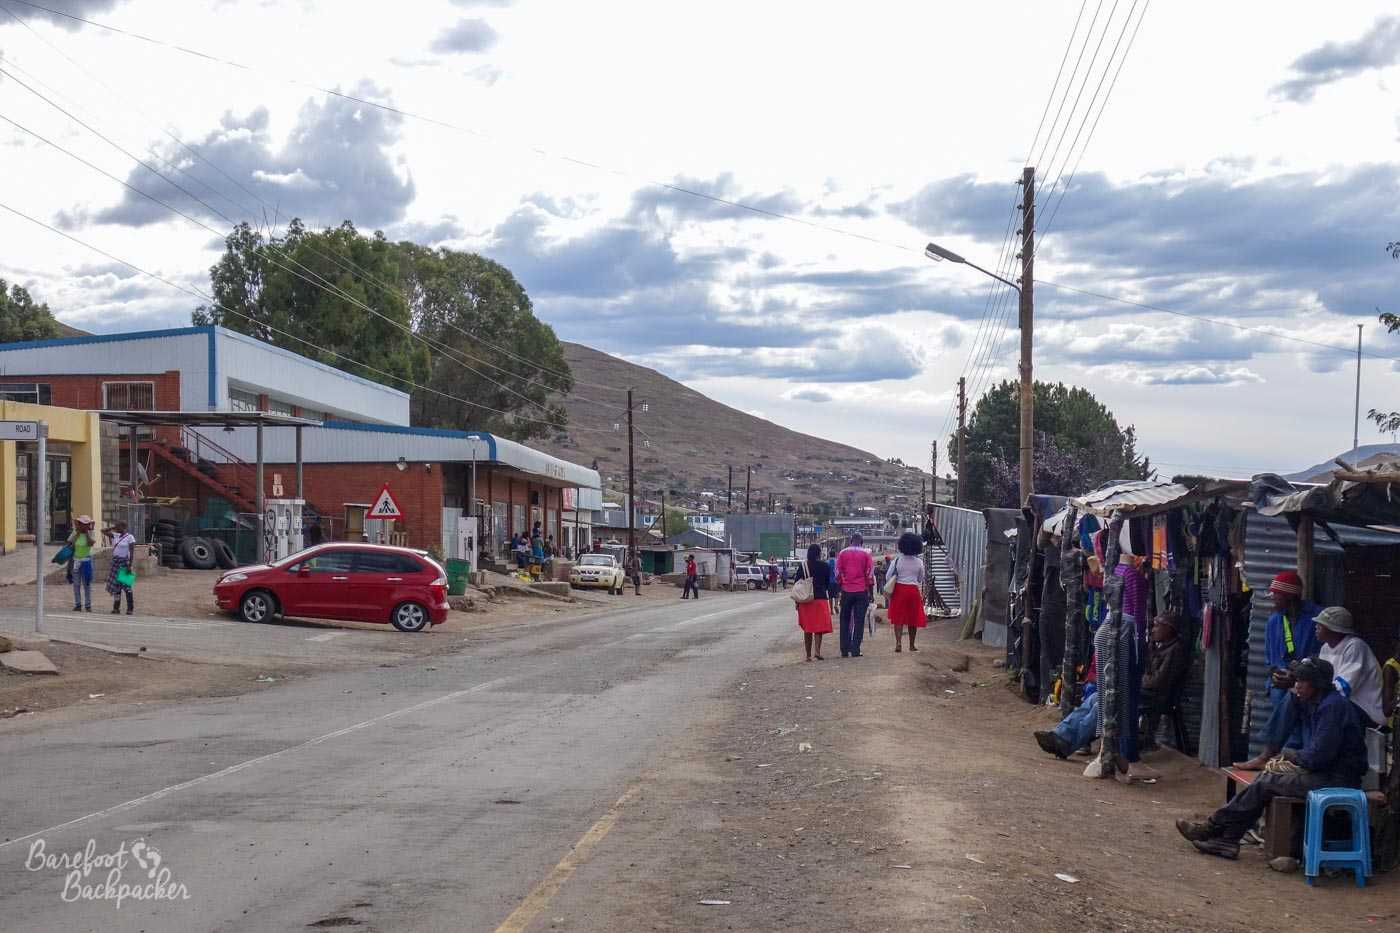 Mokhotlong town centre, Lesotho